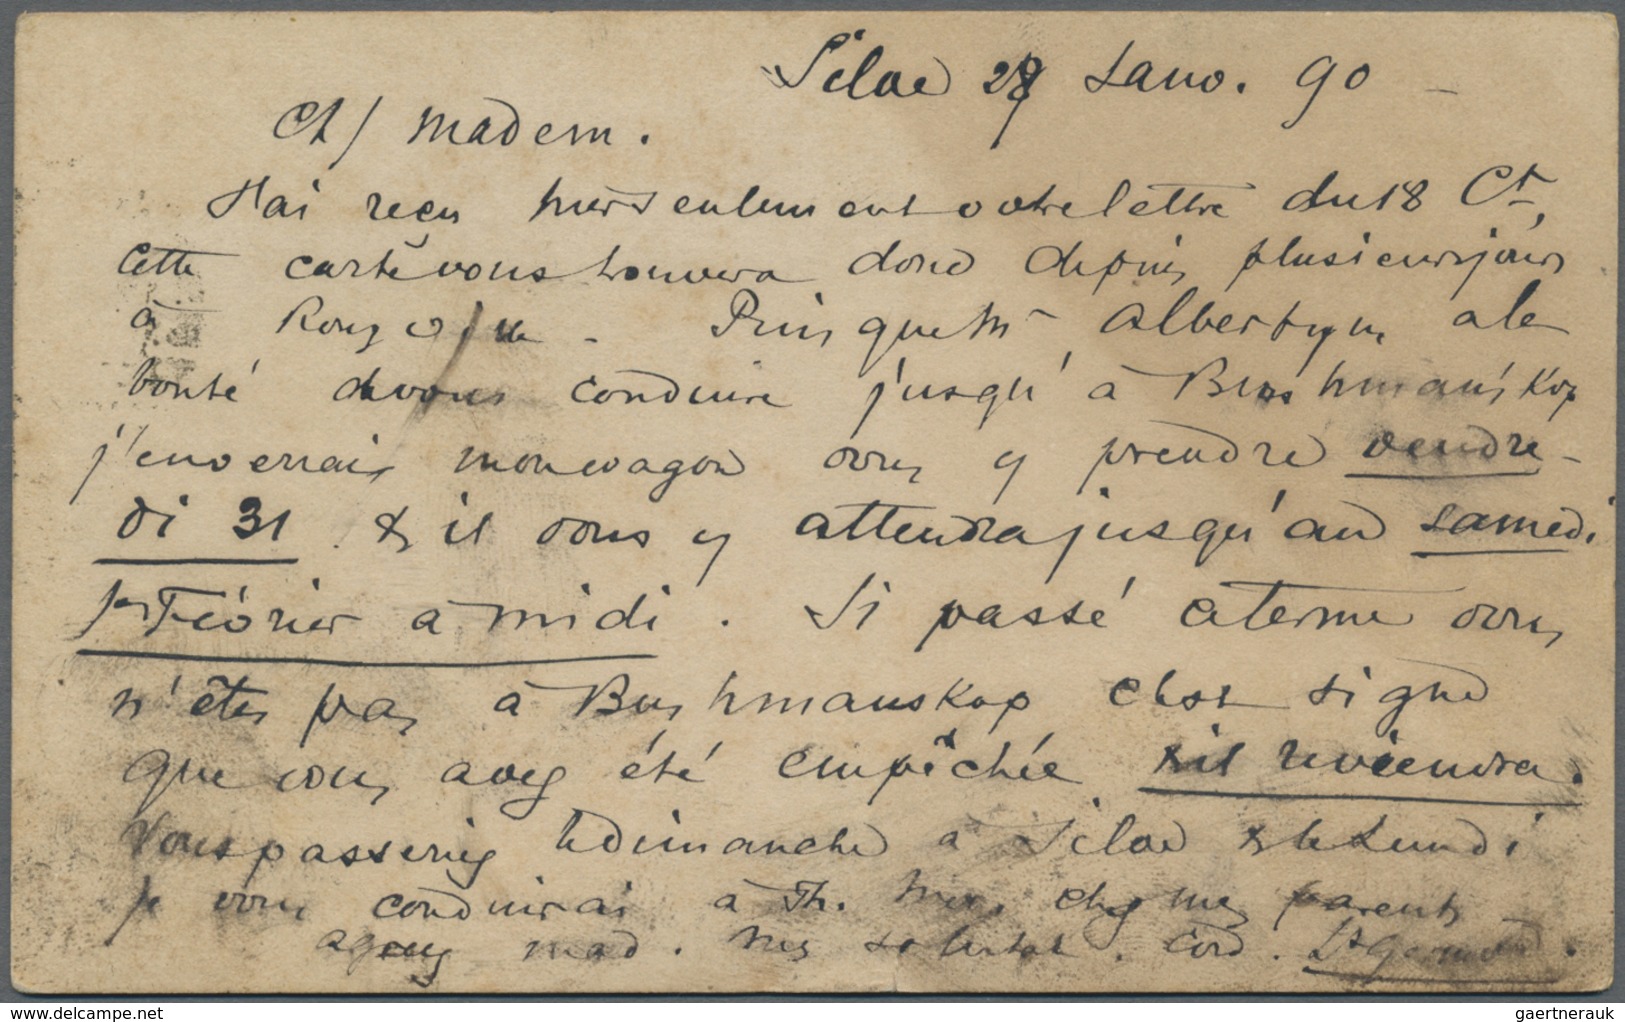 GA Basutoland: 1890, CGH Card 1/2d Canc. Unclear "156" Written In "SILAFE 28 Jan. 90" With Cds "MAFETEN - 1933-1964 Kolonie Van De Kroon